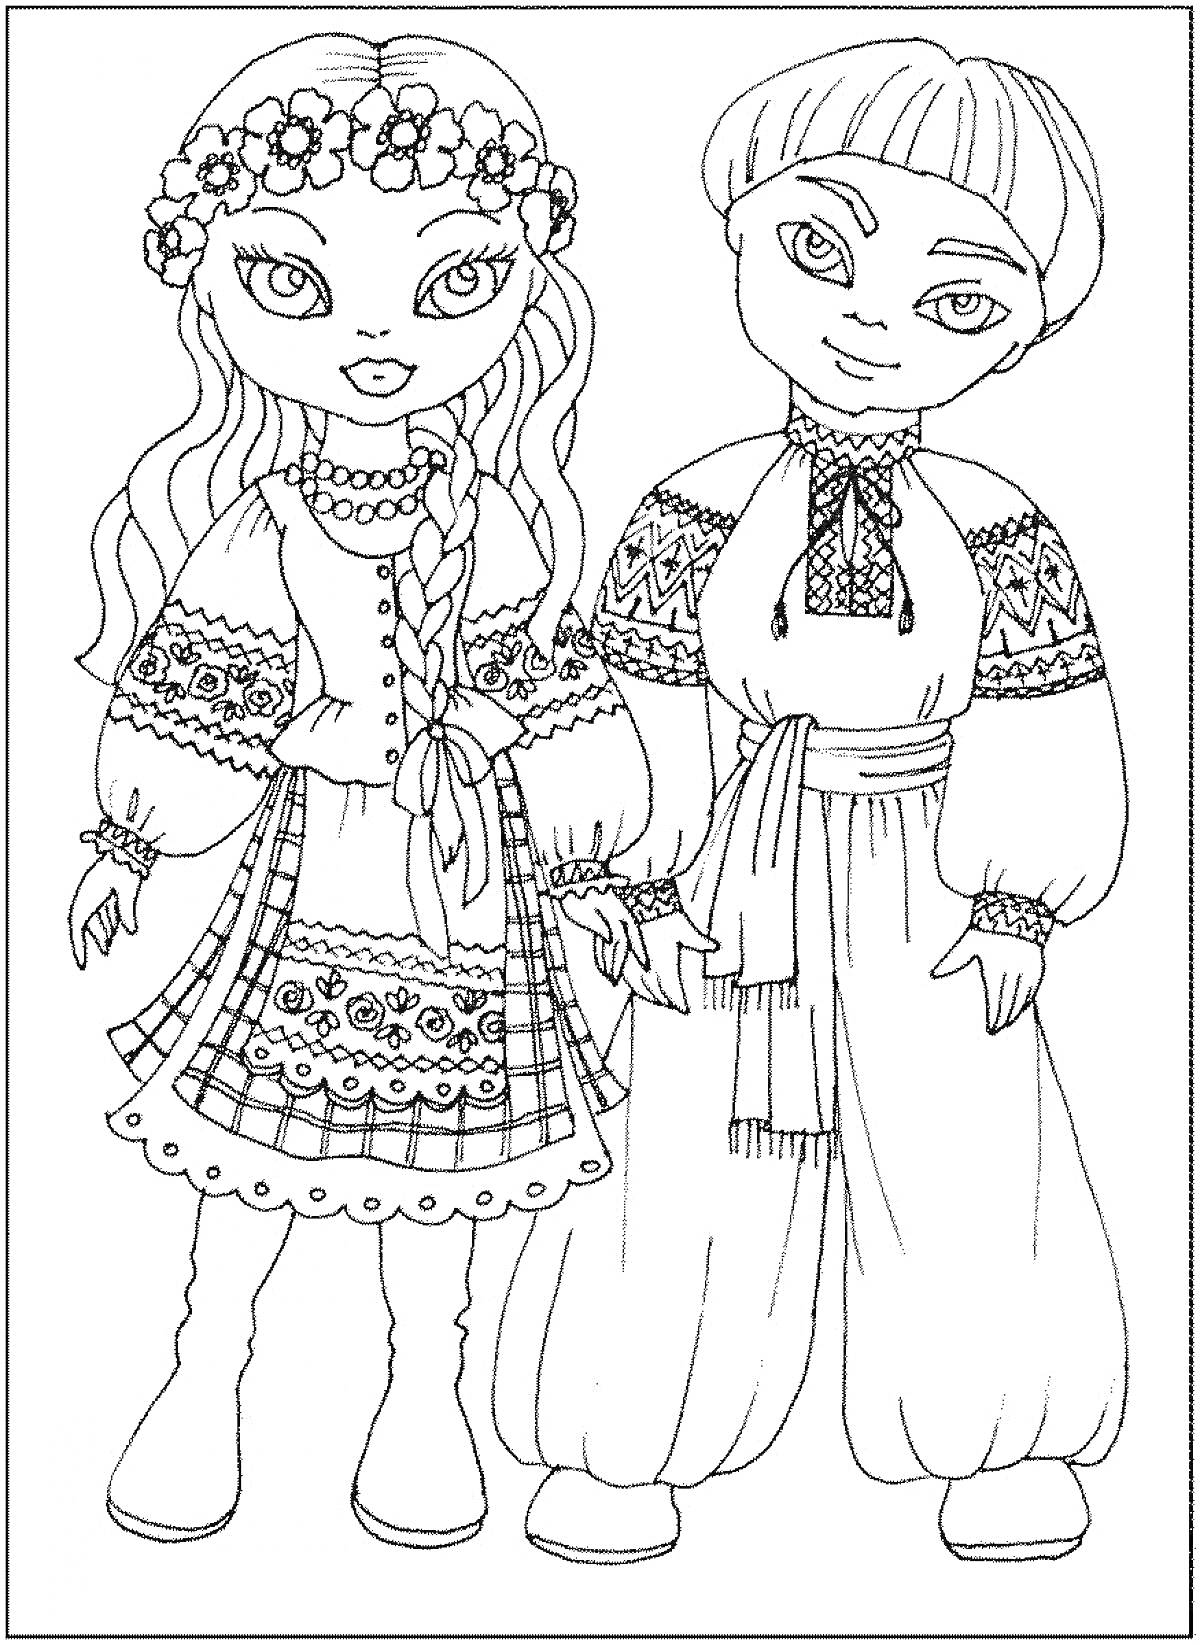 Девочка и мальчик в русских народных костюмах с венком и поясом